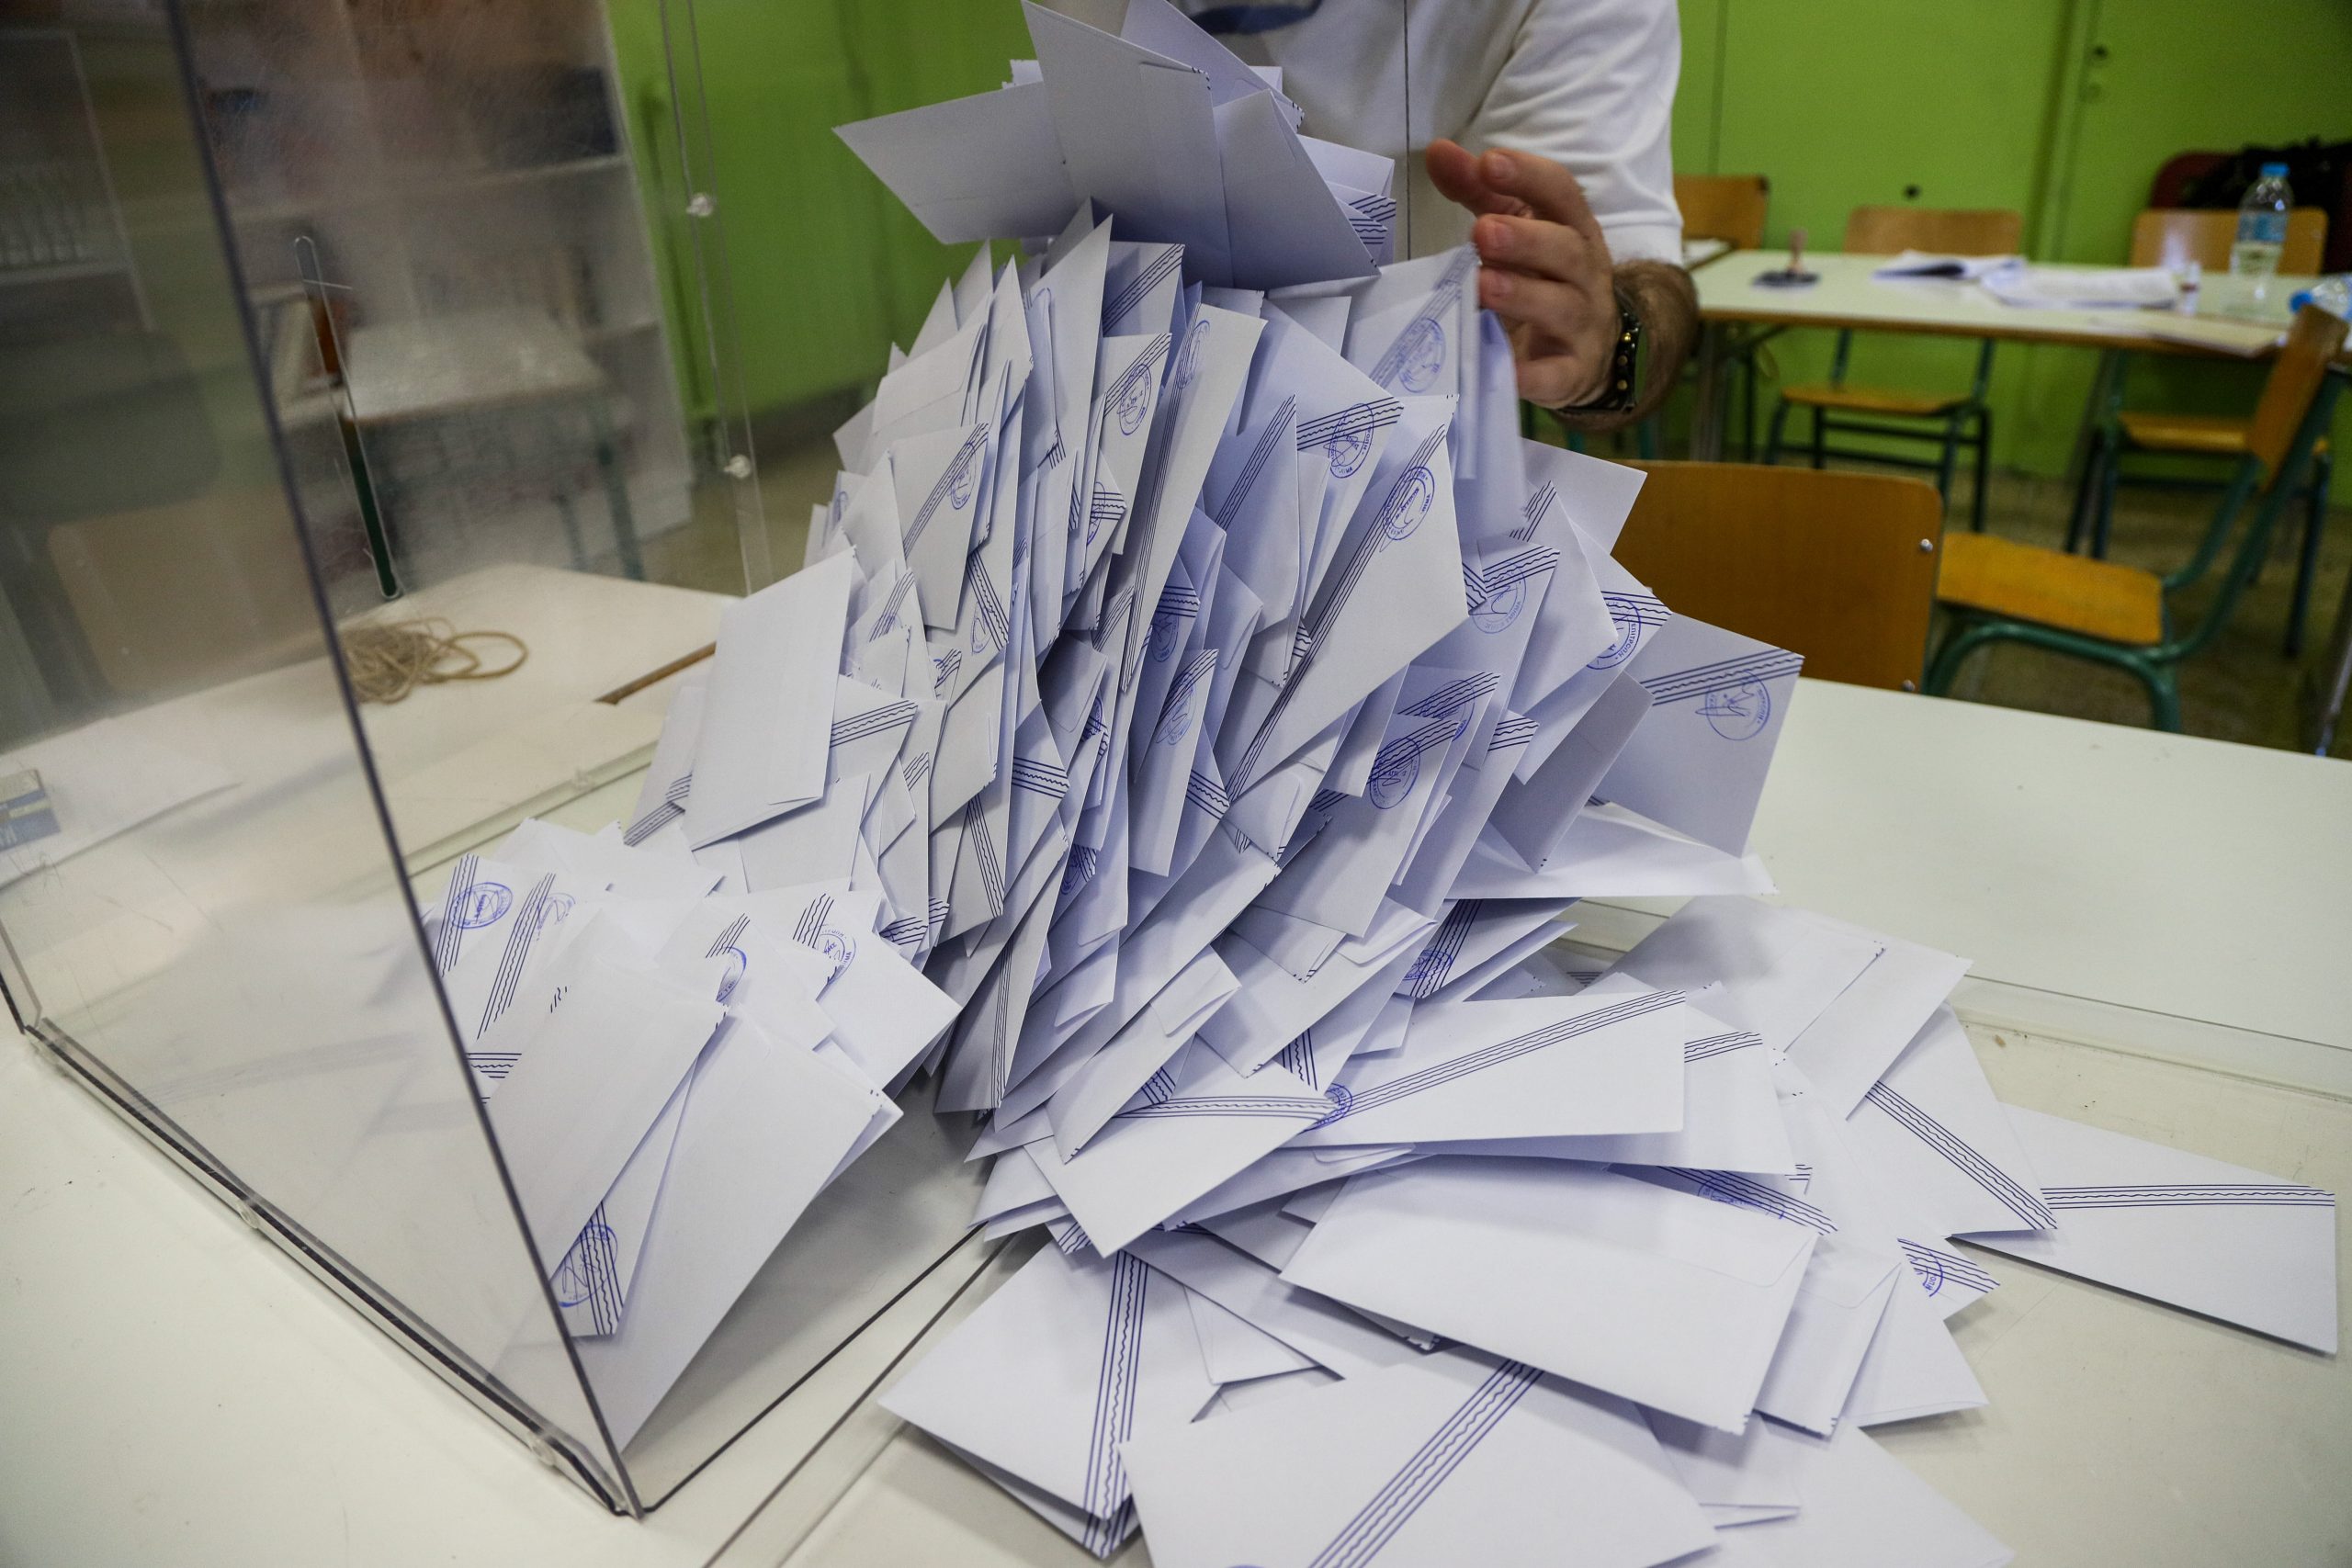 Τα… ευτράπελα των εκλογών στις αναμετρήσεις των τελευταίων ετών – Τρακτέρ, νυφικά, συνθήματα και 5ευρα στις κάλπες